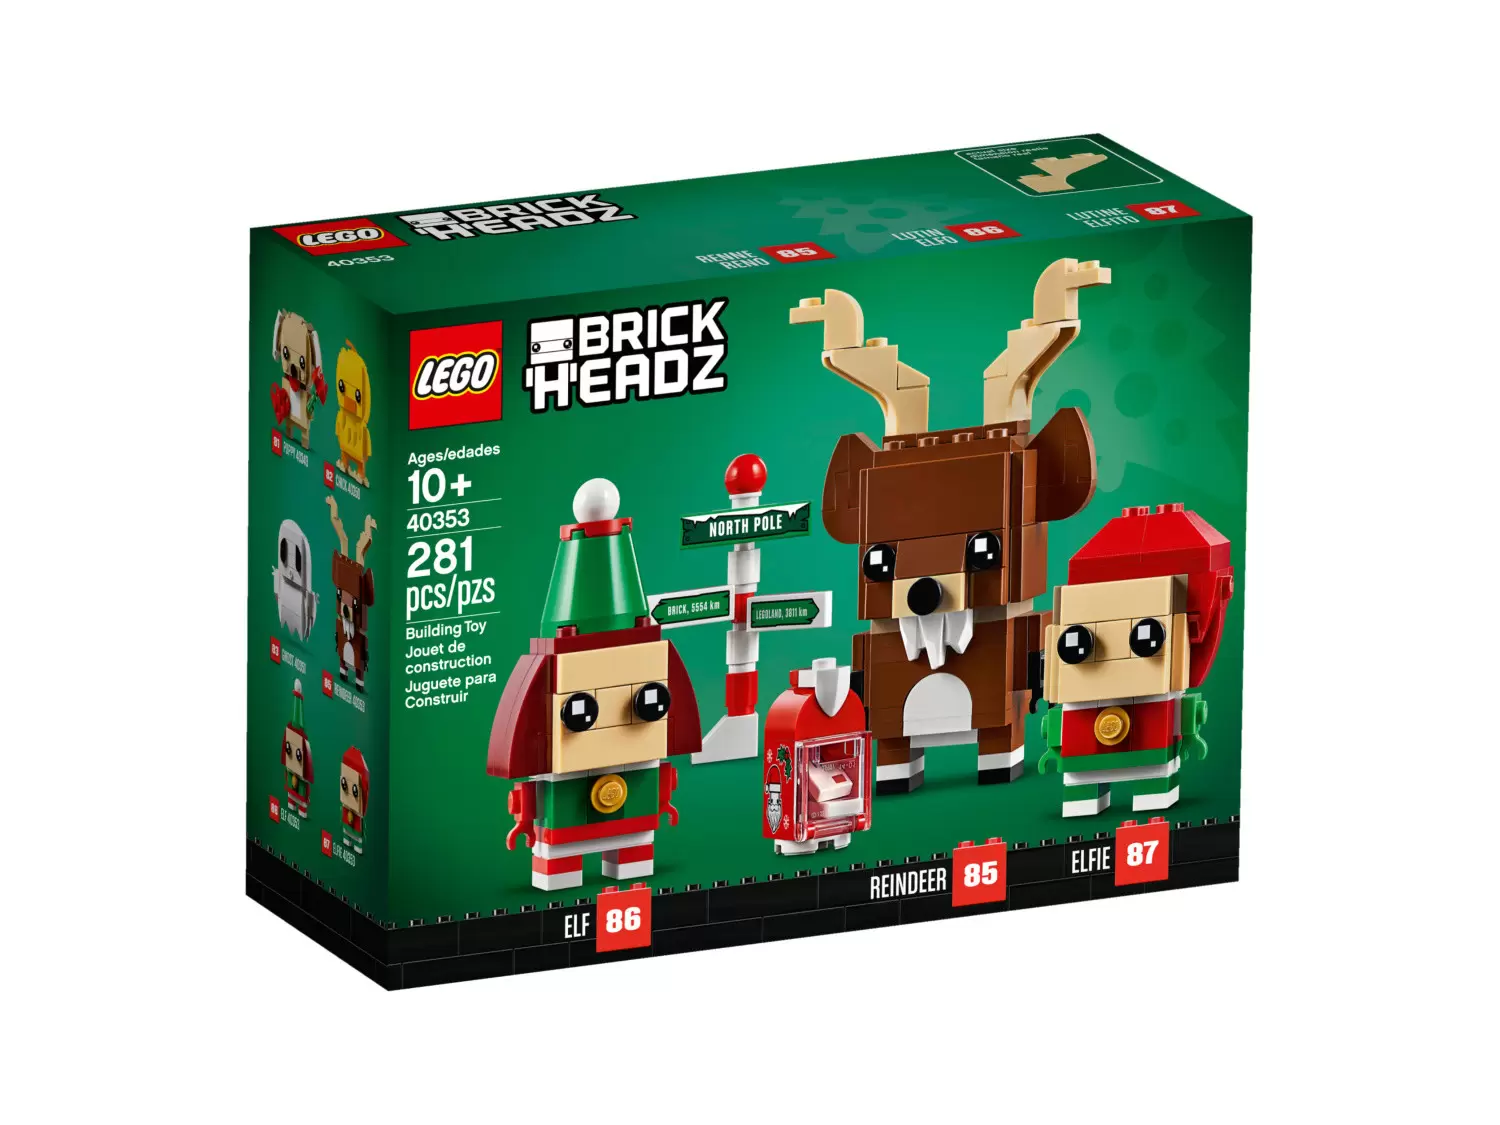 LEGO BrickHeadz - 85 & 86 & 87 - Reindeer, Elf & Elfie